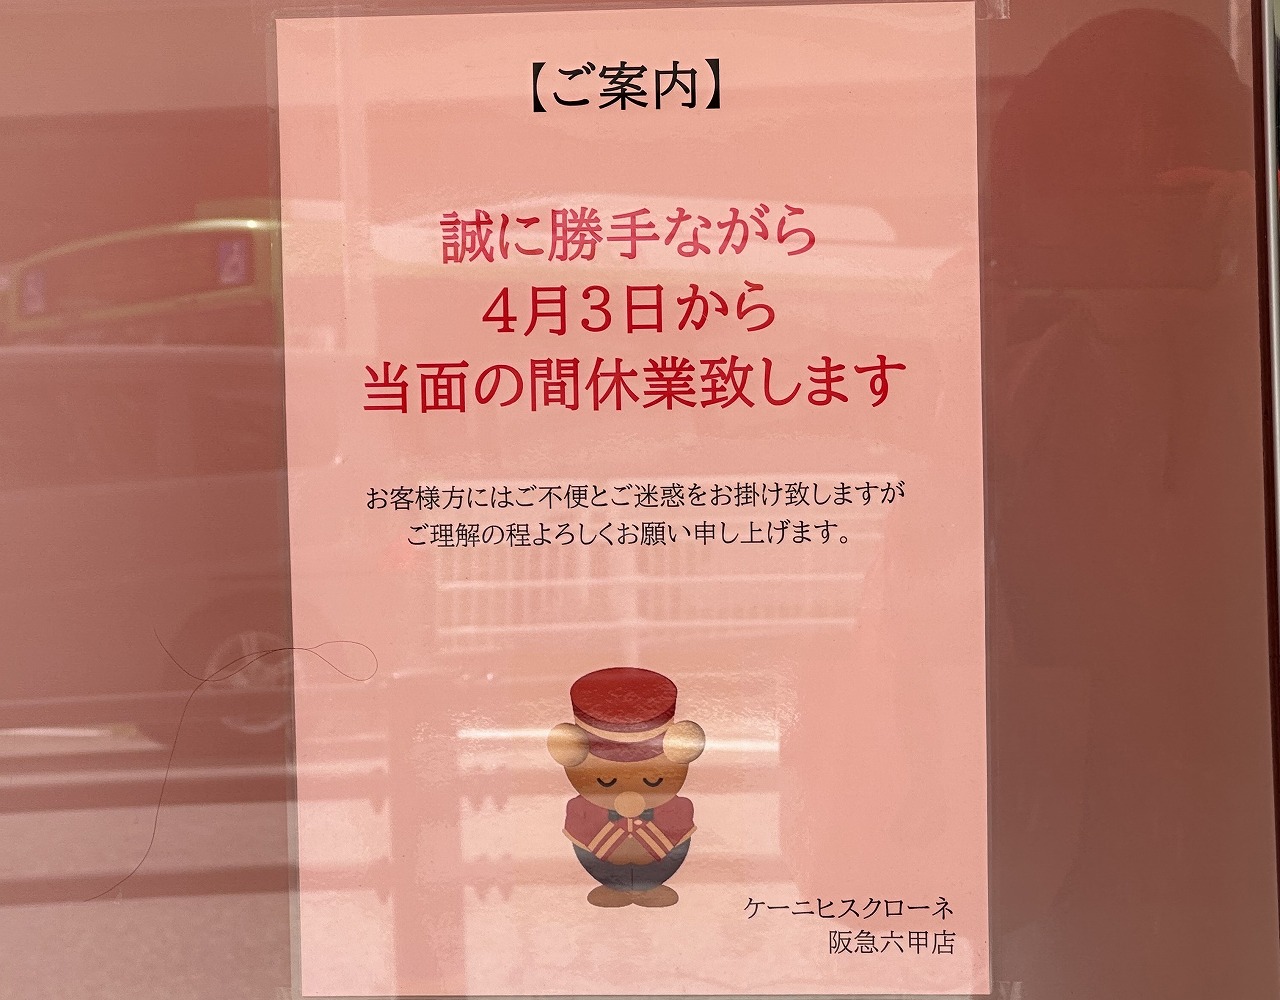 ケーニヒスクローネ 阪急六甲店